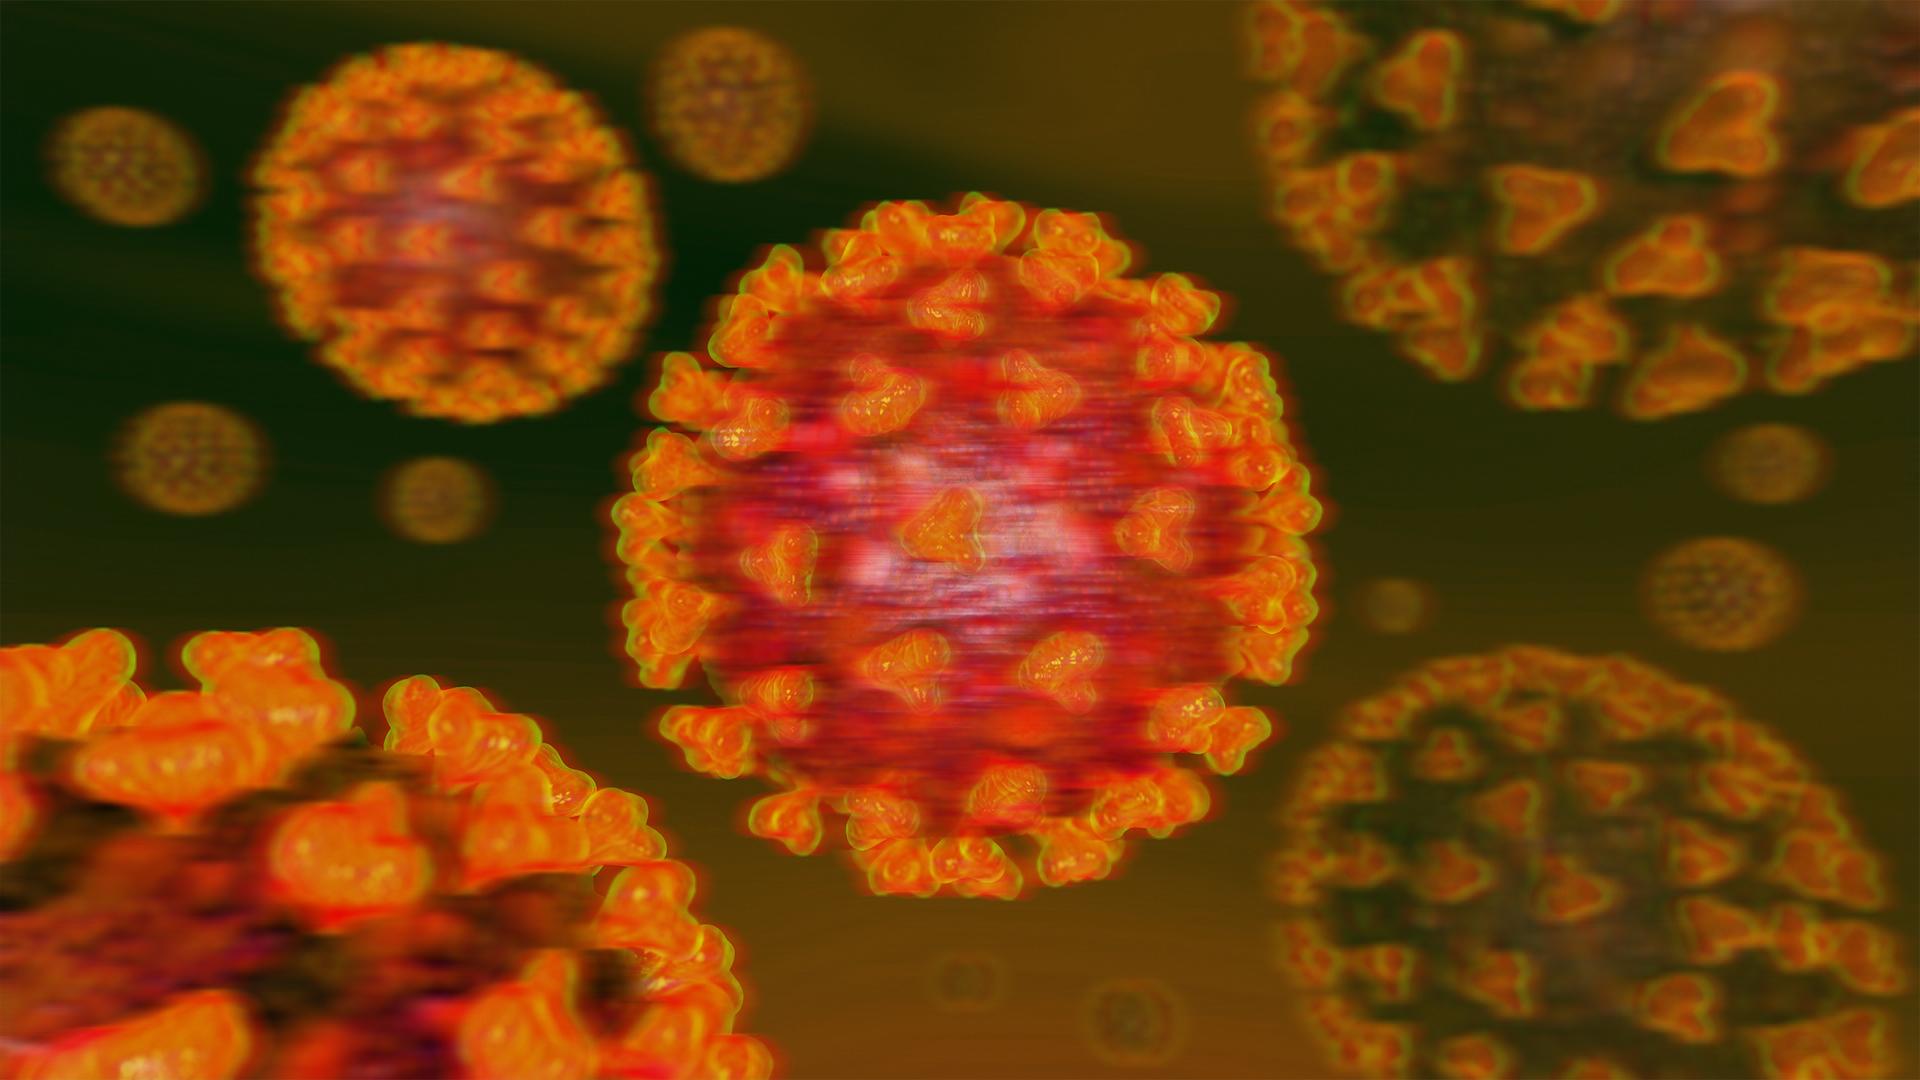 Pemerintah resmi mengumumkan pelarangan masuk ke Indonesia usai ada mutasi virus corona omicron. - INDOSPORT